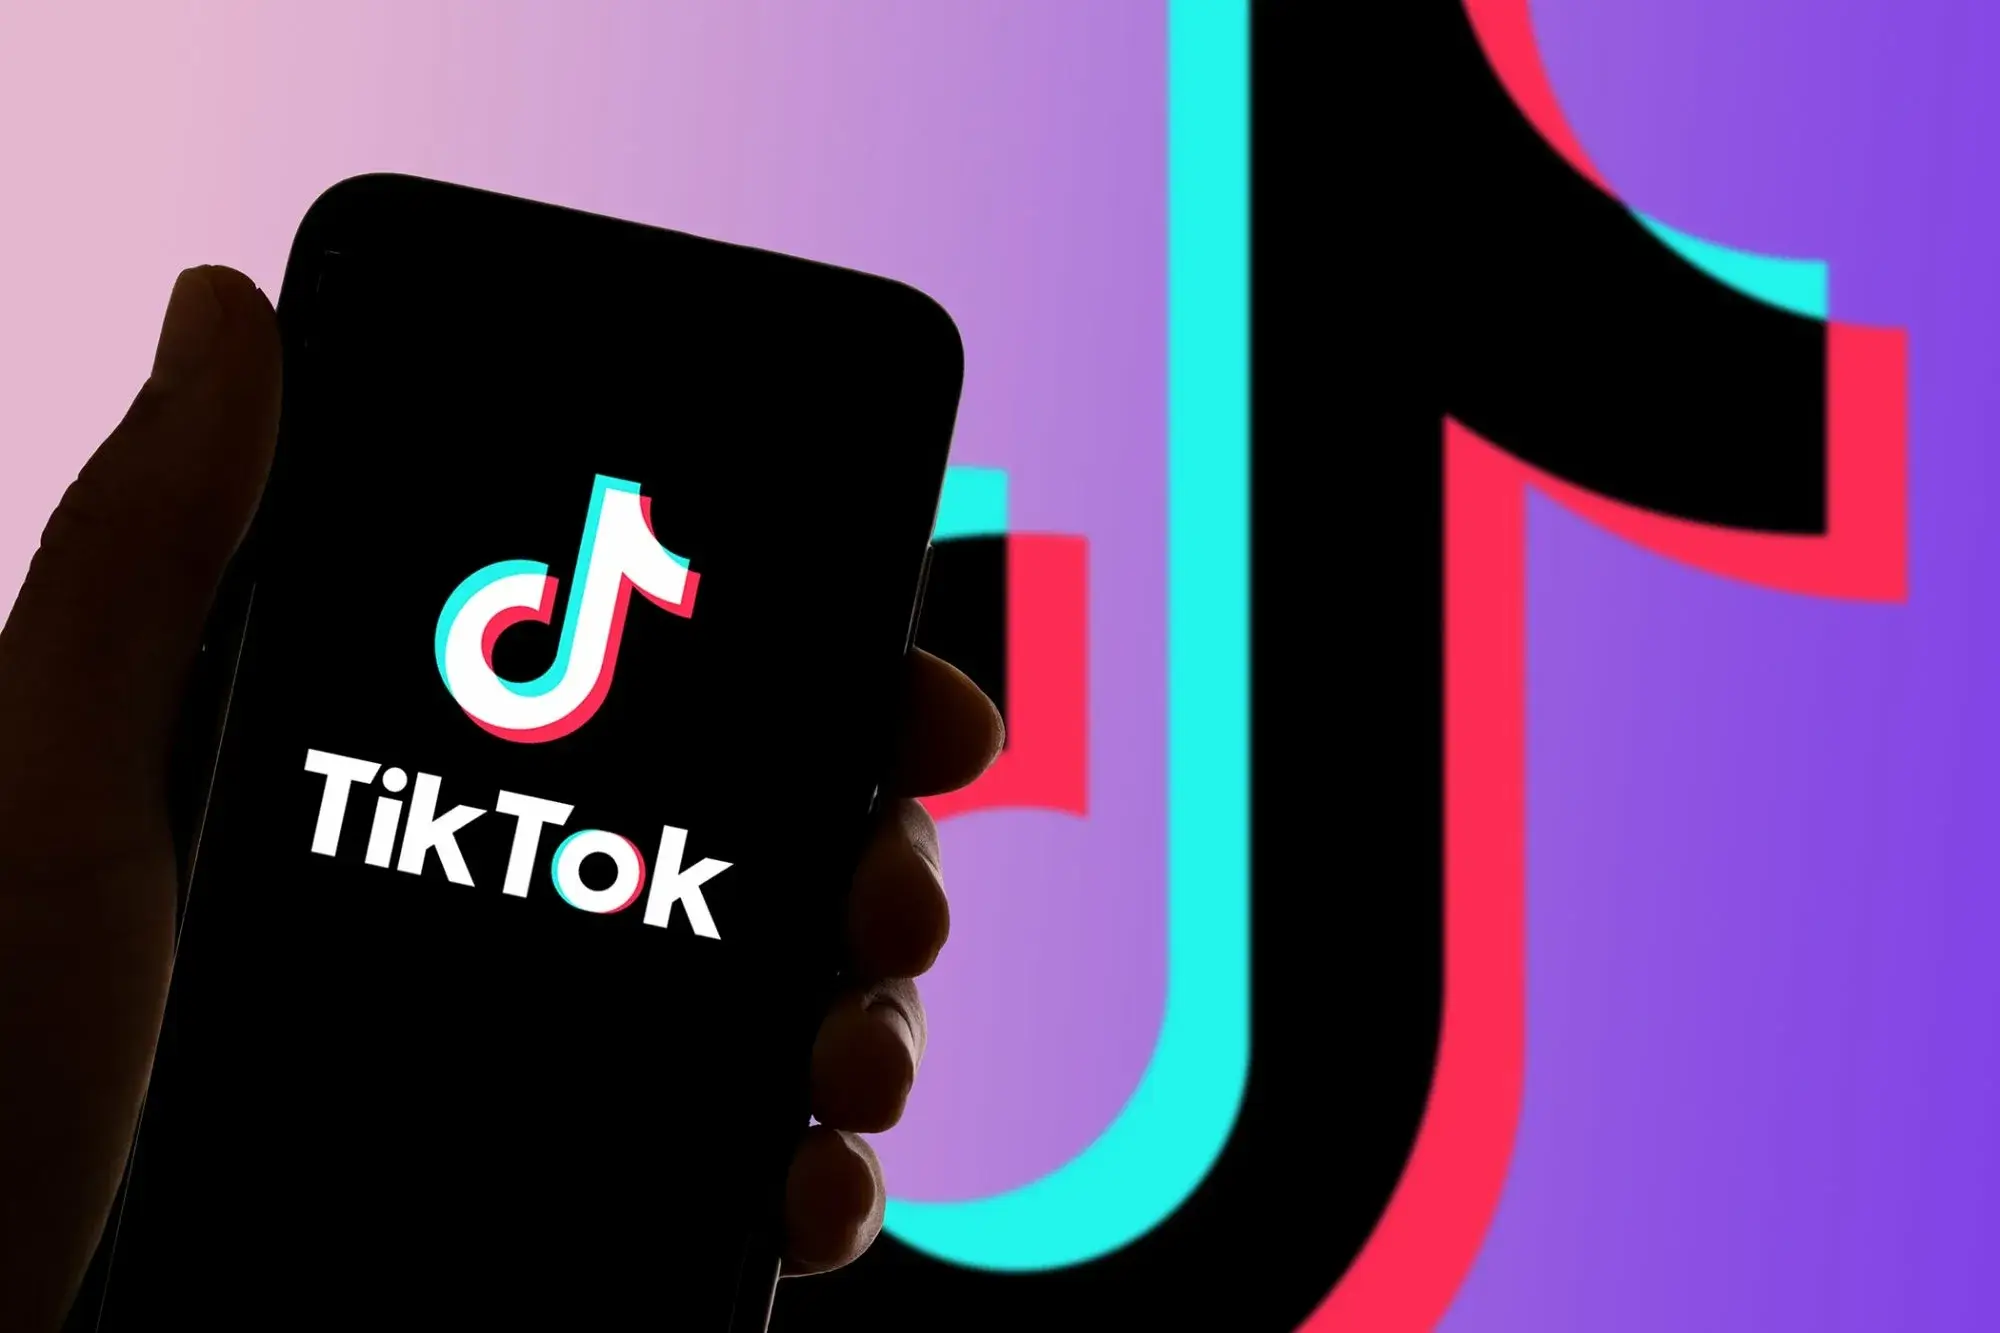 O TikTok está testando uma nova funcionalidade que integra o Google Search aos seus próprios resultados de pesquisa dentro do aplicativo.